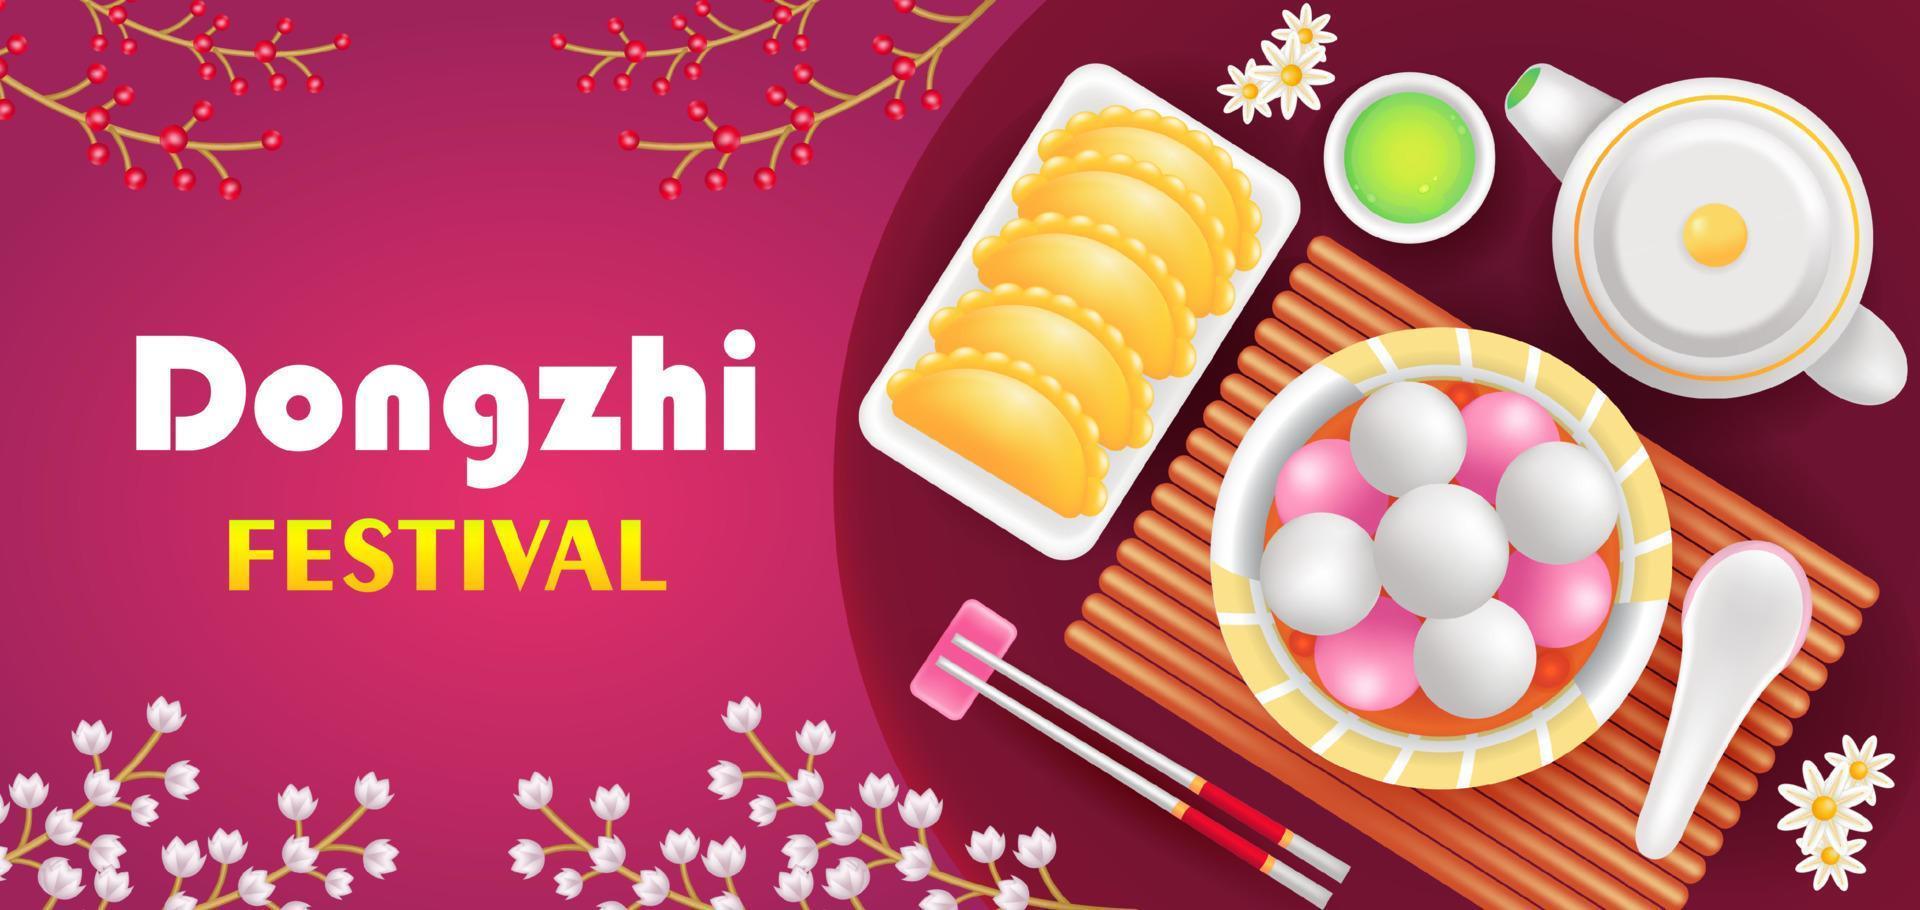 dongzhi festival. 3d illustratie van gebakken knoedels, zoet soep knoedels, groen thee en bloemen ornament vector